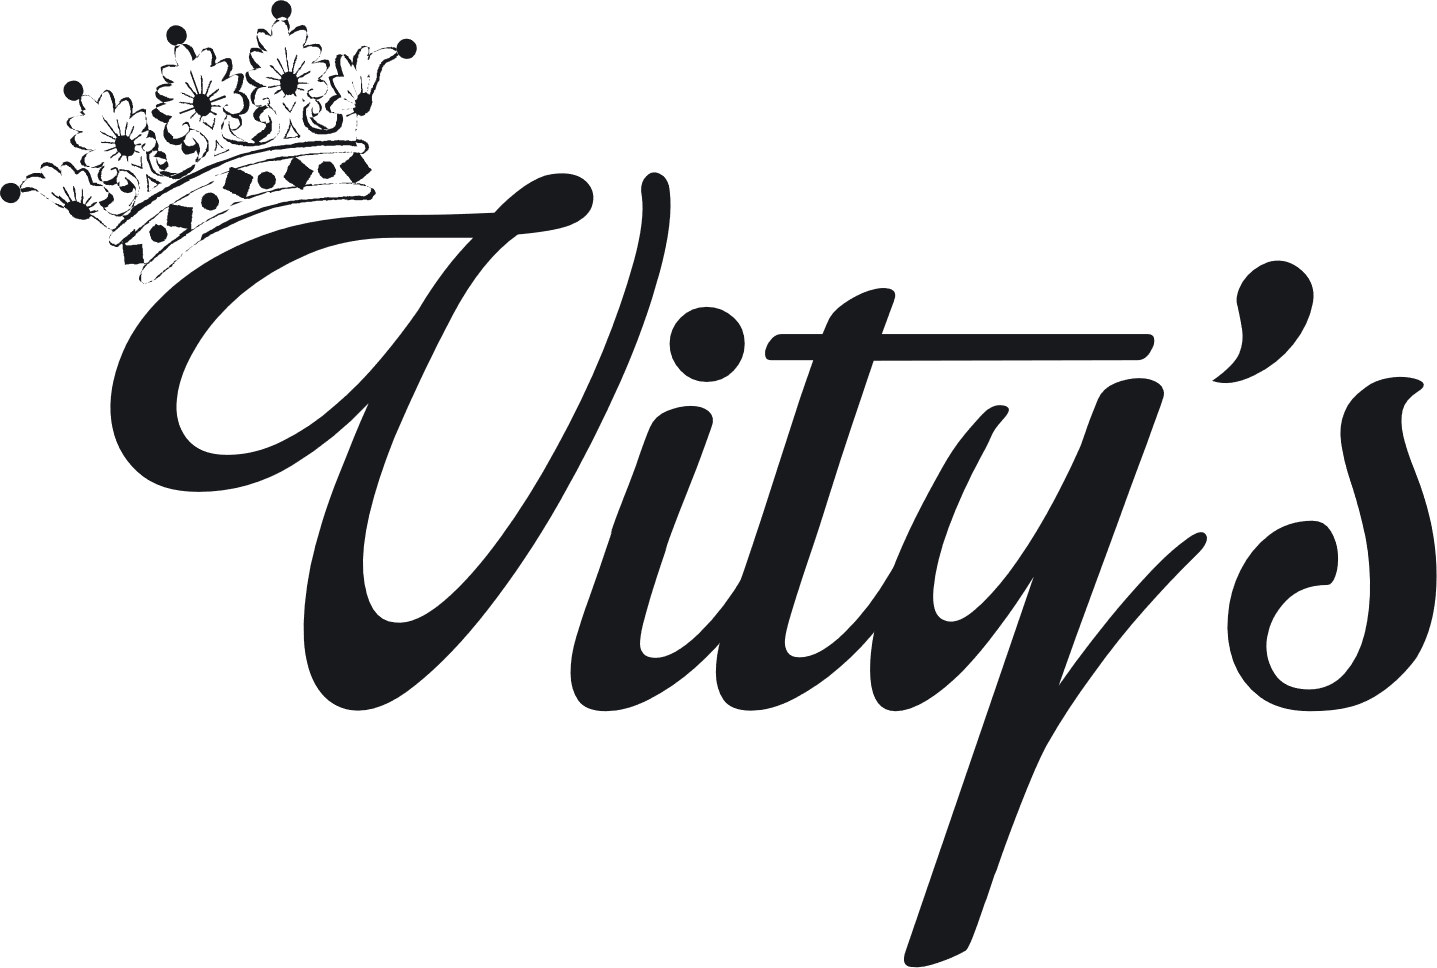 Vity's Design(ビティズデザイン) 取扱い開始。 – ハーレー・カスタム・ワールド [HARLEY CUSTOM WORLD]